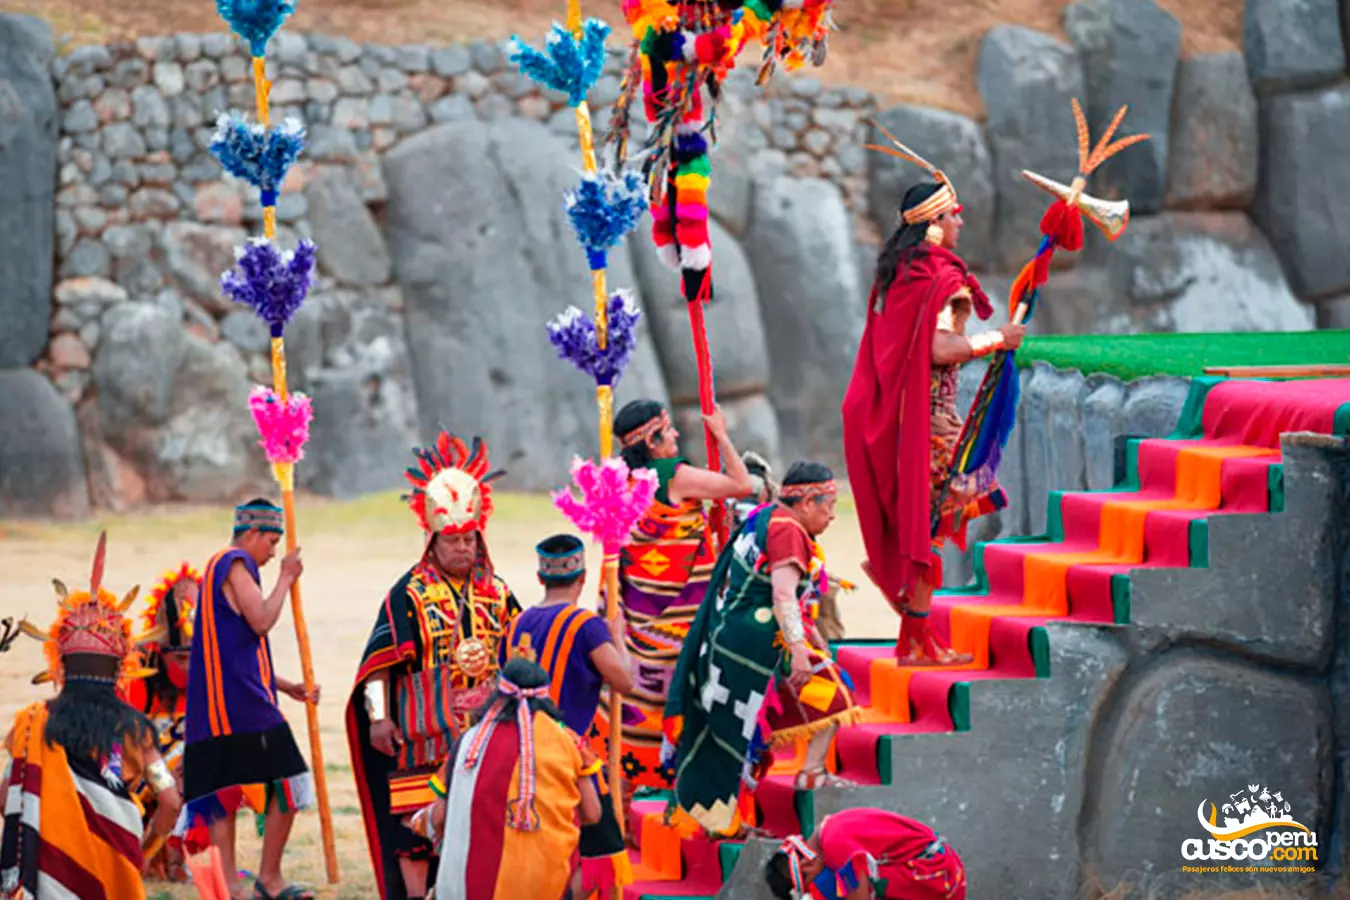 Inti Raymi Cusco Peru. Source: CuscoPeru.com